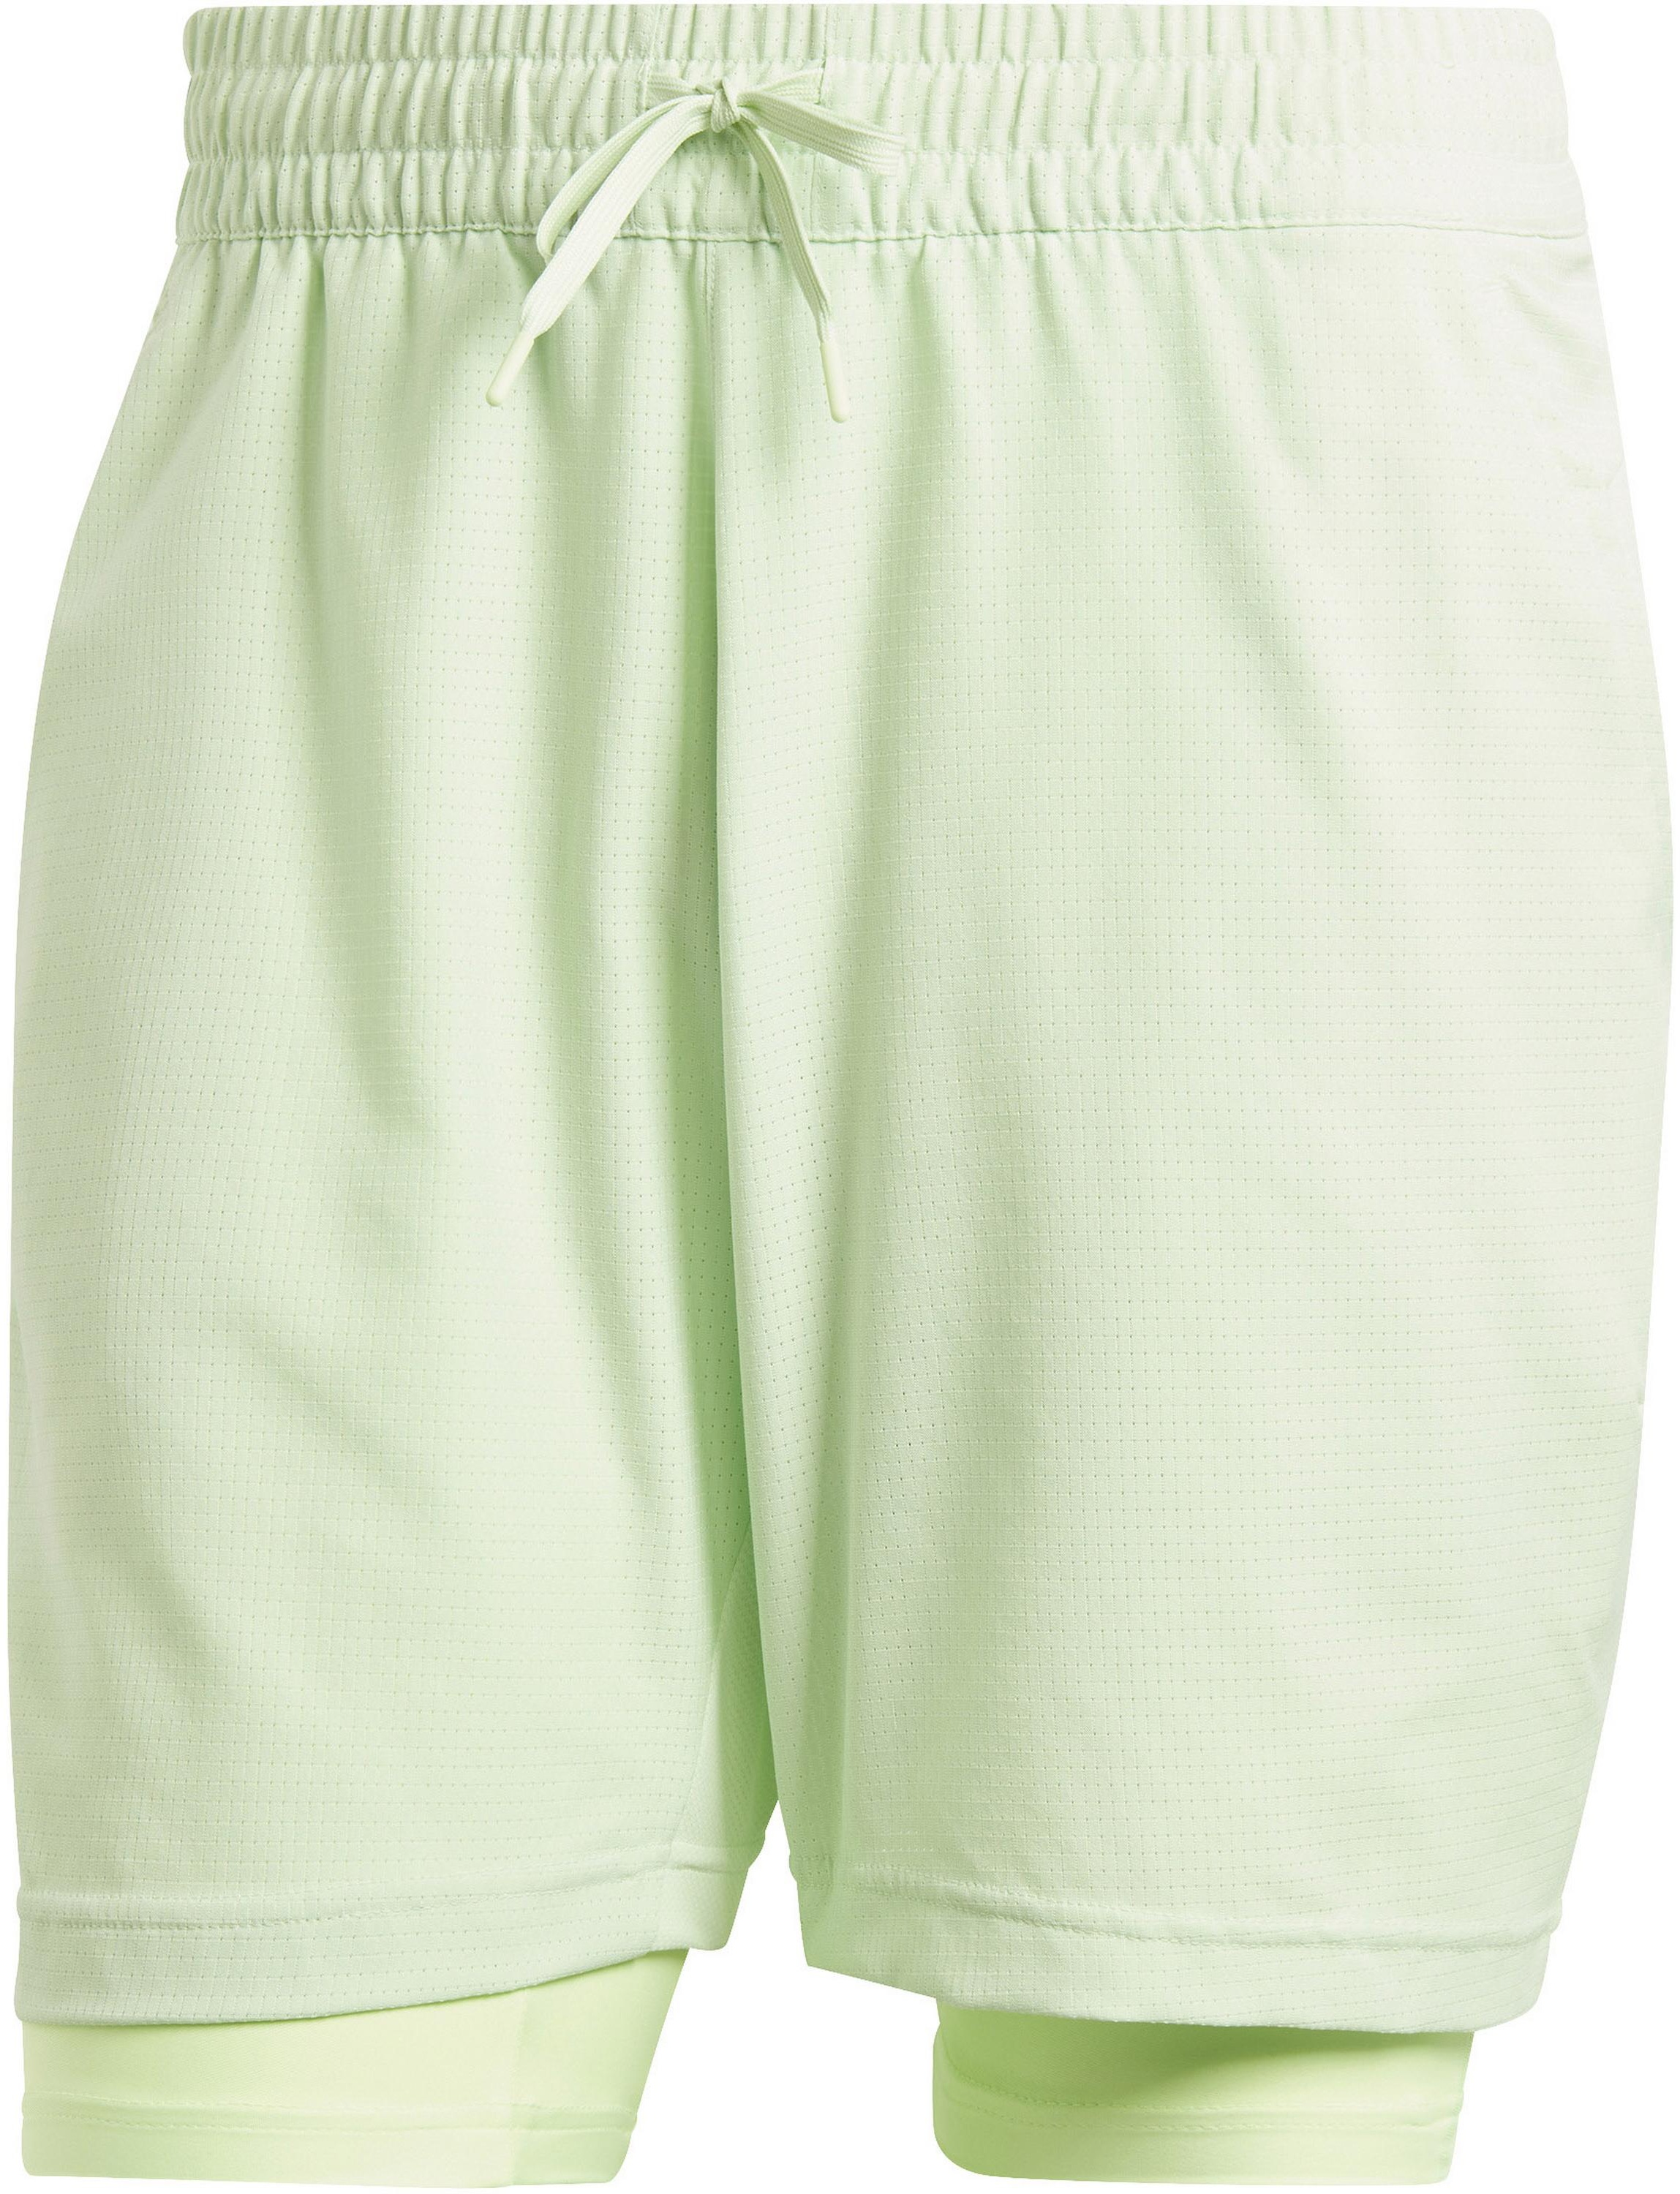 adidas Tennisshorts Herren in semi green spark-green spark, Größe M - grün